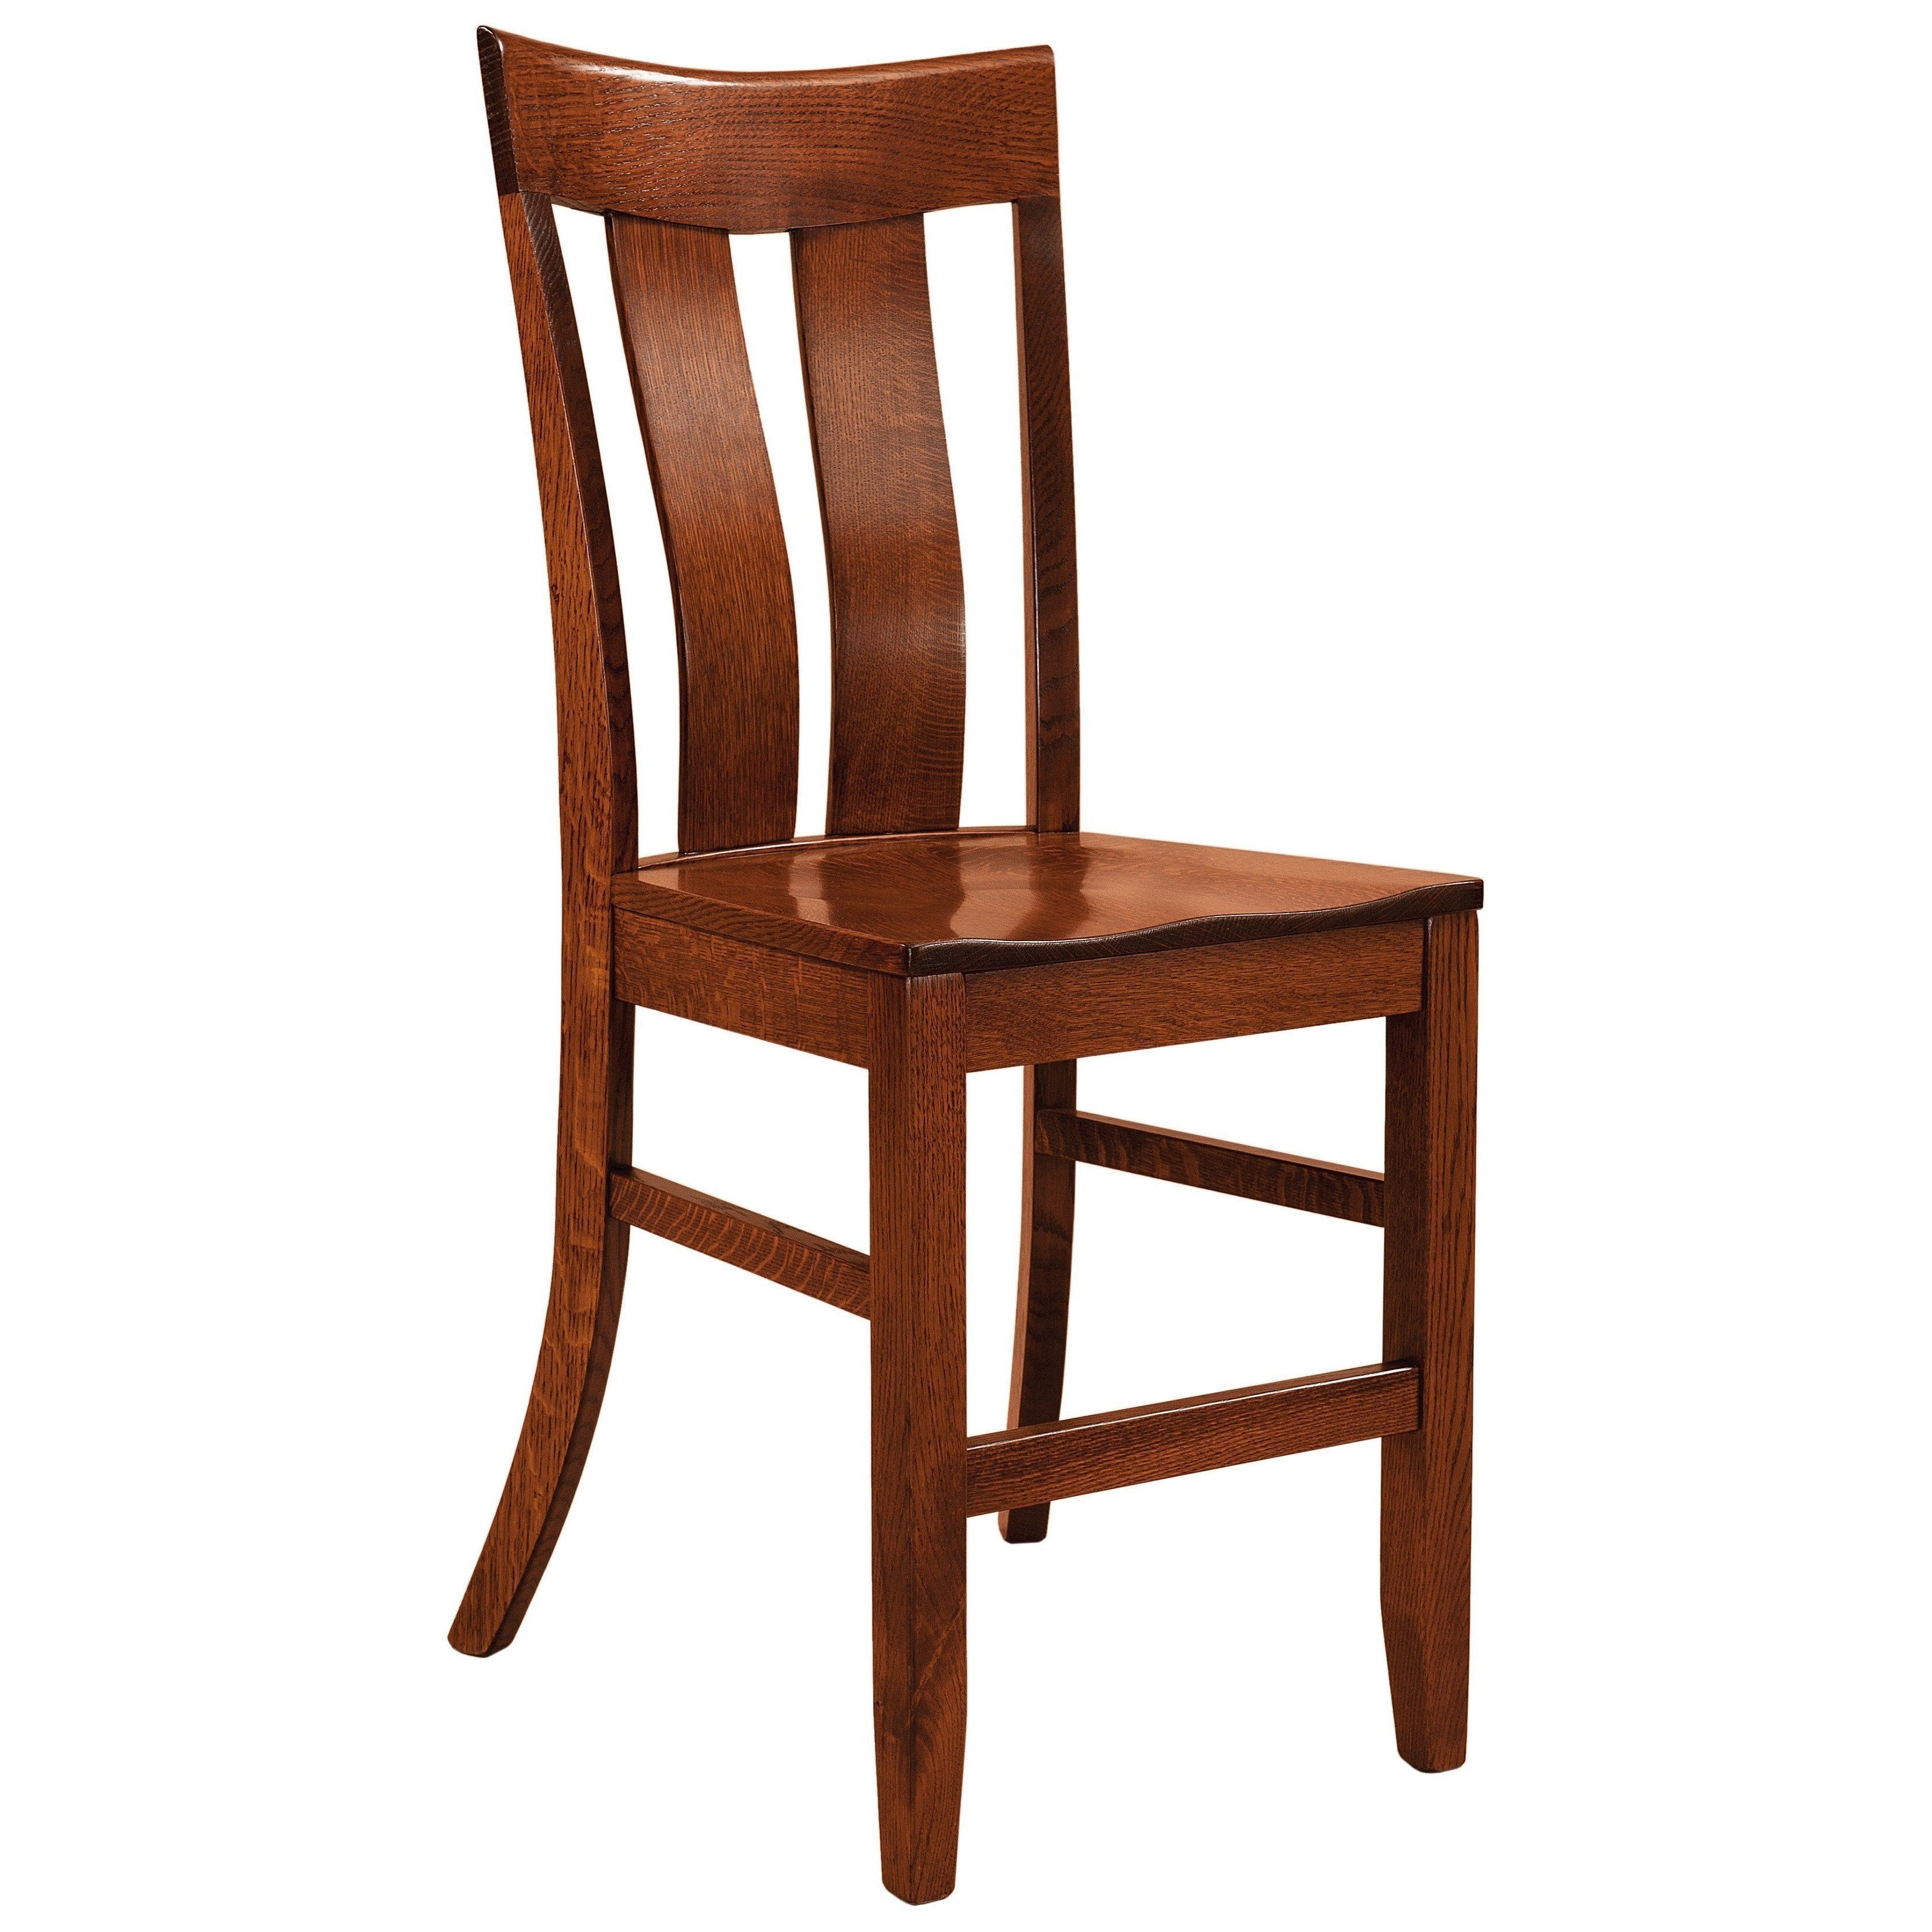 sherwood-bar-chair-260315.jpg